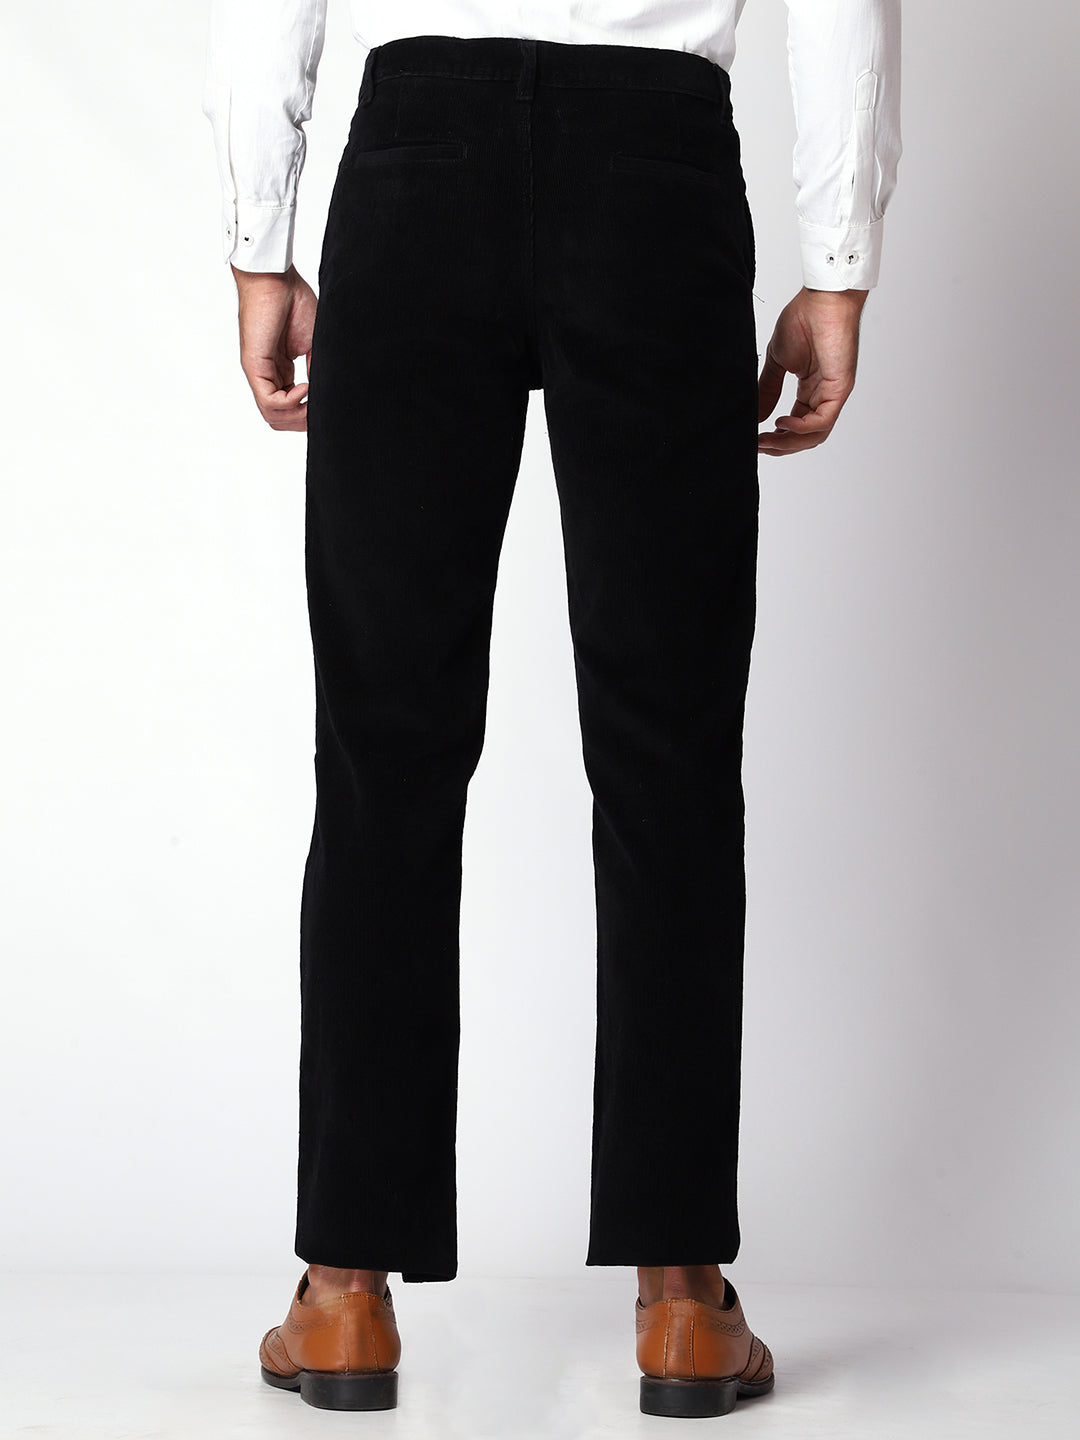 Black Corduroy Trouser For Men.